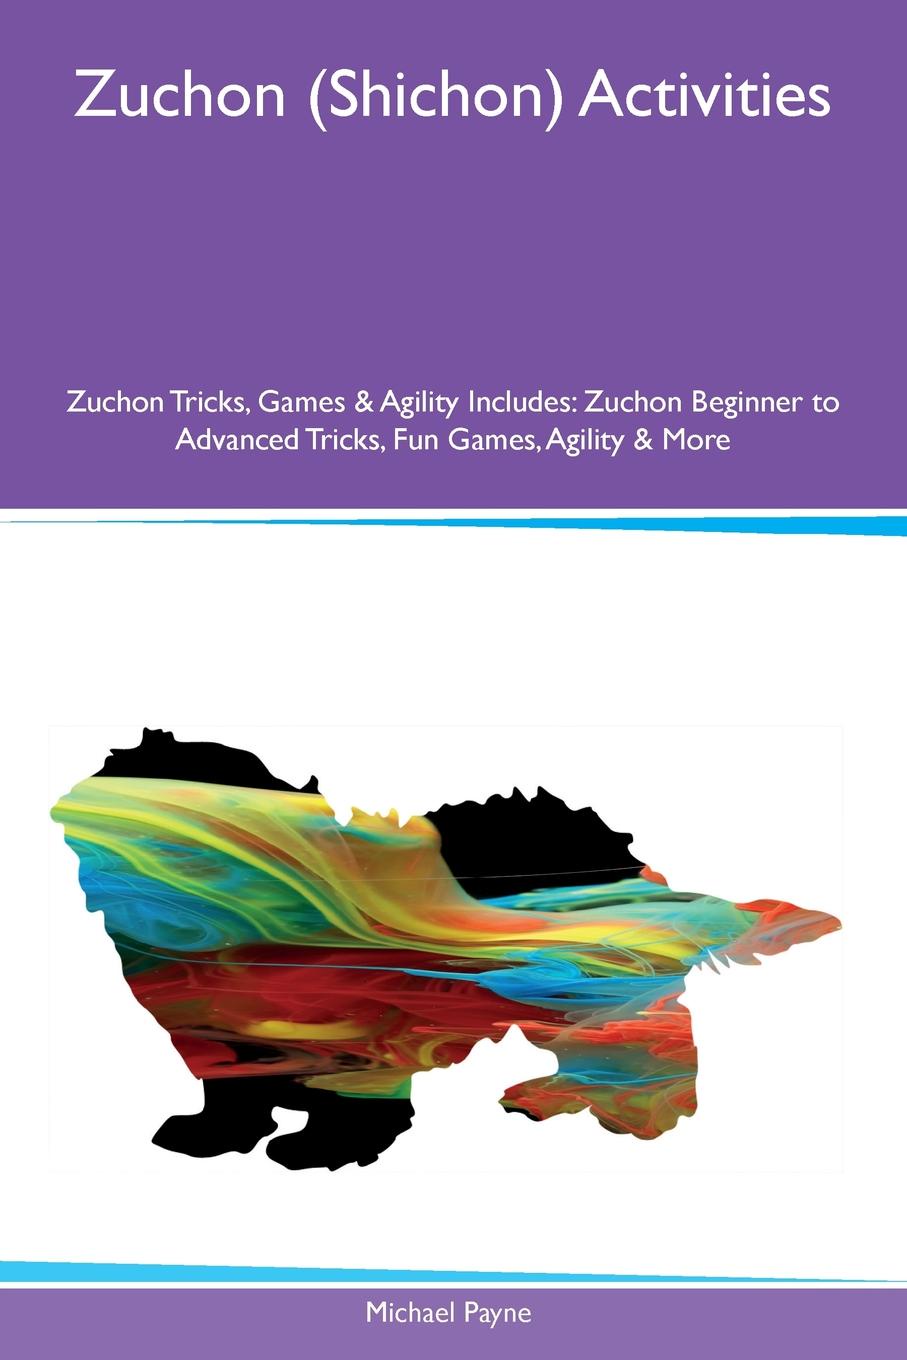 Zuchon (Shichon) Activities Zuchon Tricks, Games & Agility Includes. Zuchon Beginner to Advanced Tricks, Fun Games, Agility & More